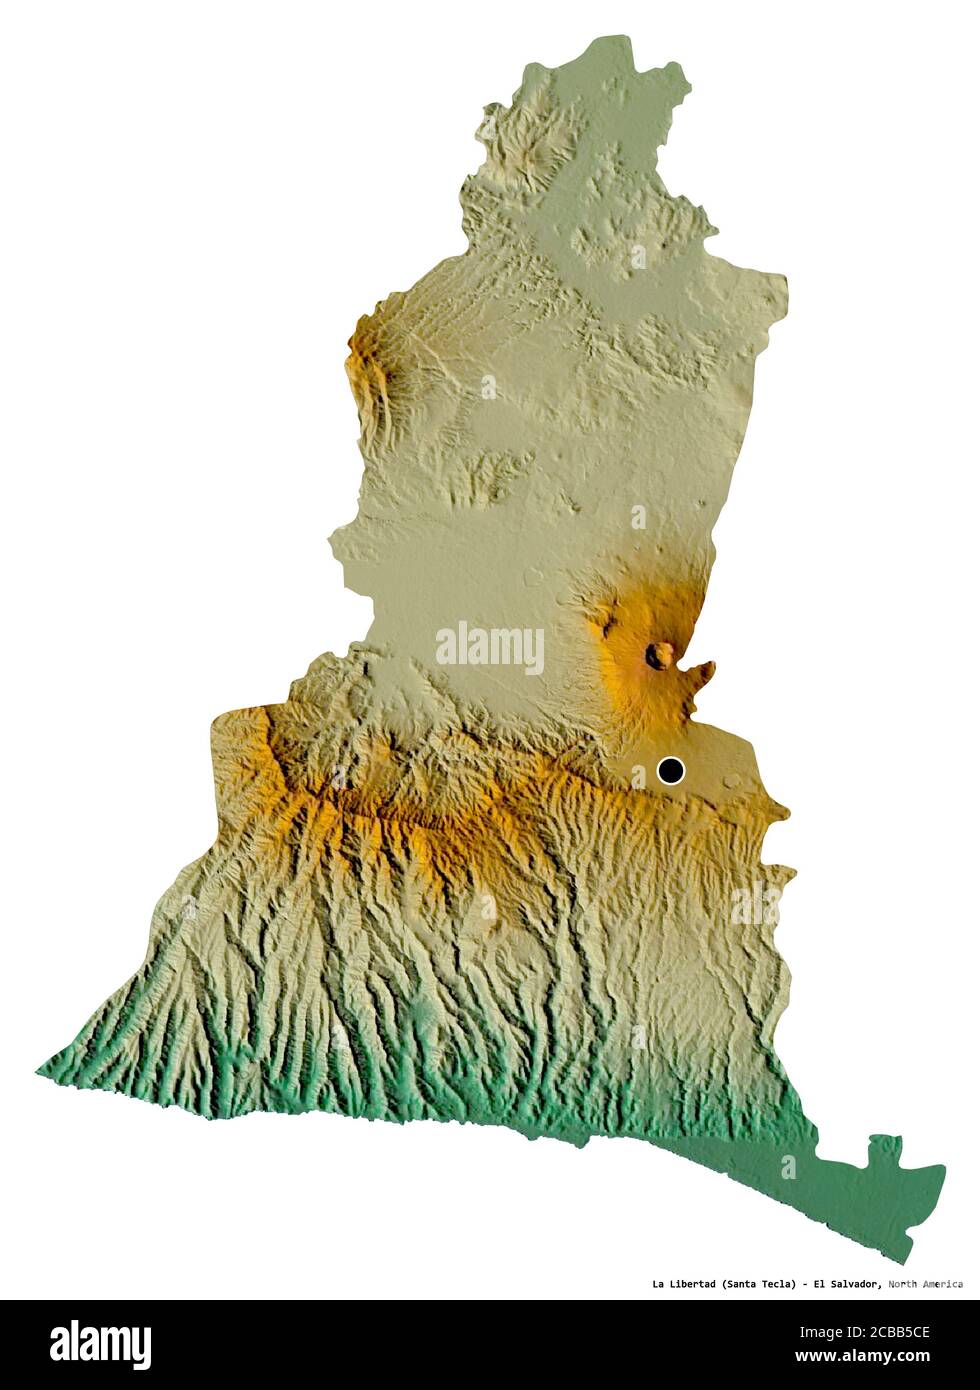 Forme de la Libertad, département d'El Salvador, avec sa capitale isolée sur fond blanc. Carte topographique de relief. Rendu 3D Banque D'Images